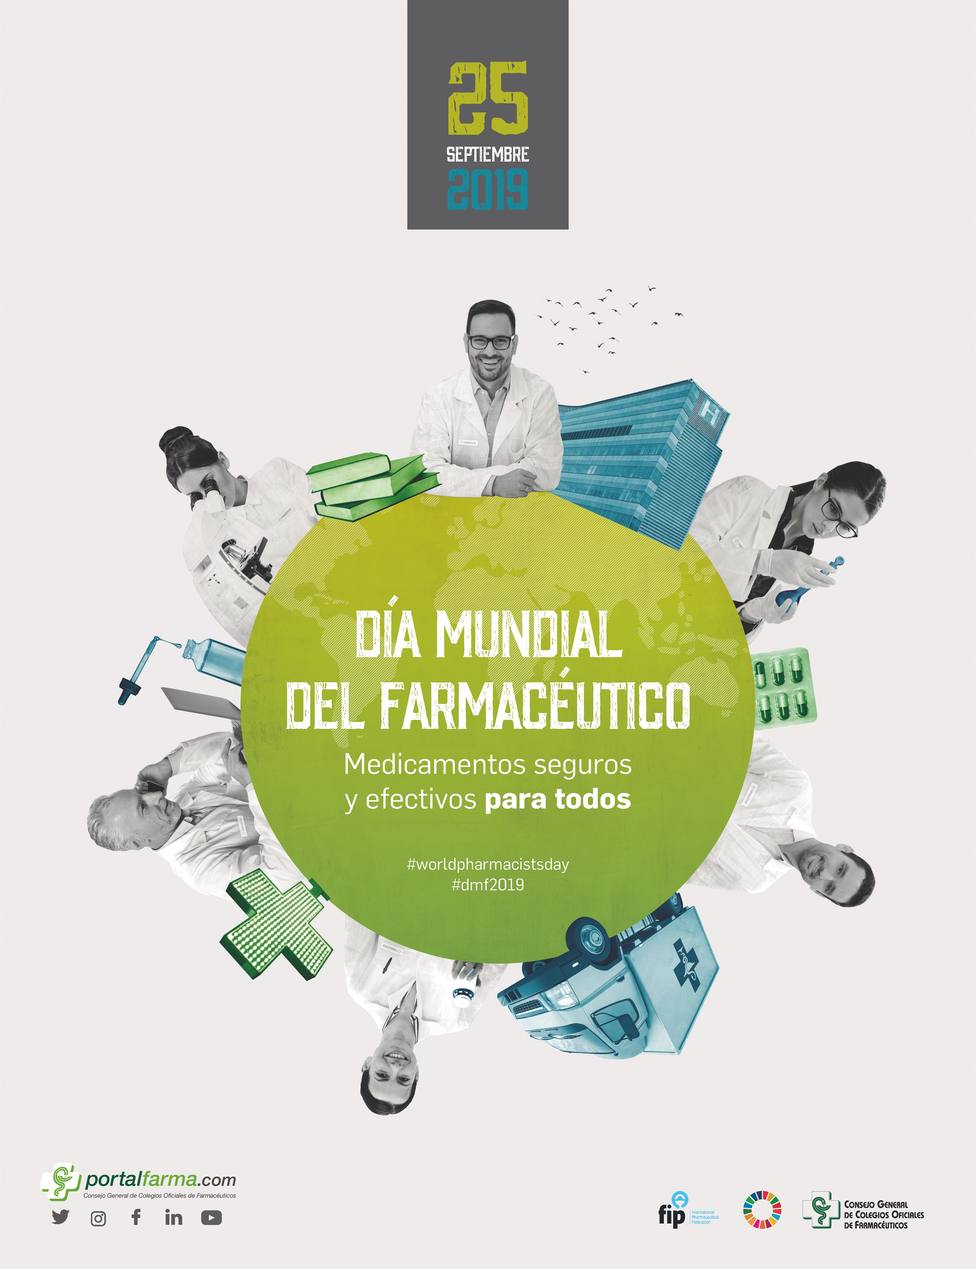 Los farmacéuticos celebran su Día Mundial el 25 de septiembre bajo el lema Medicamentos seguros y efectivos para todos